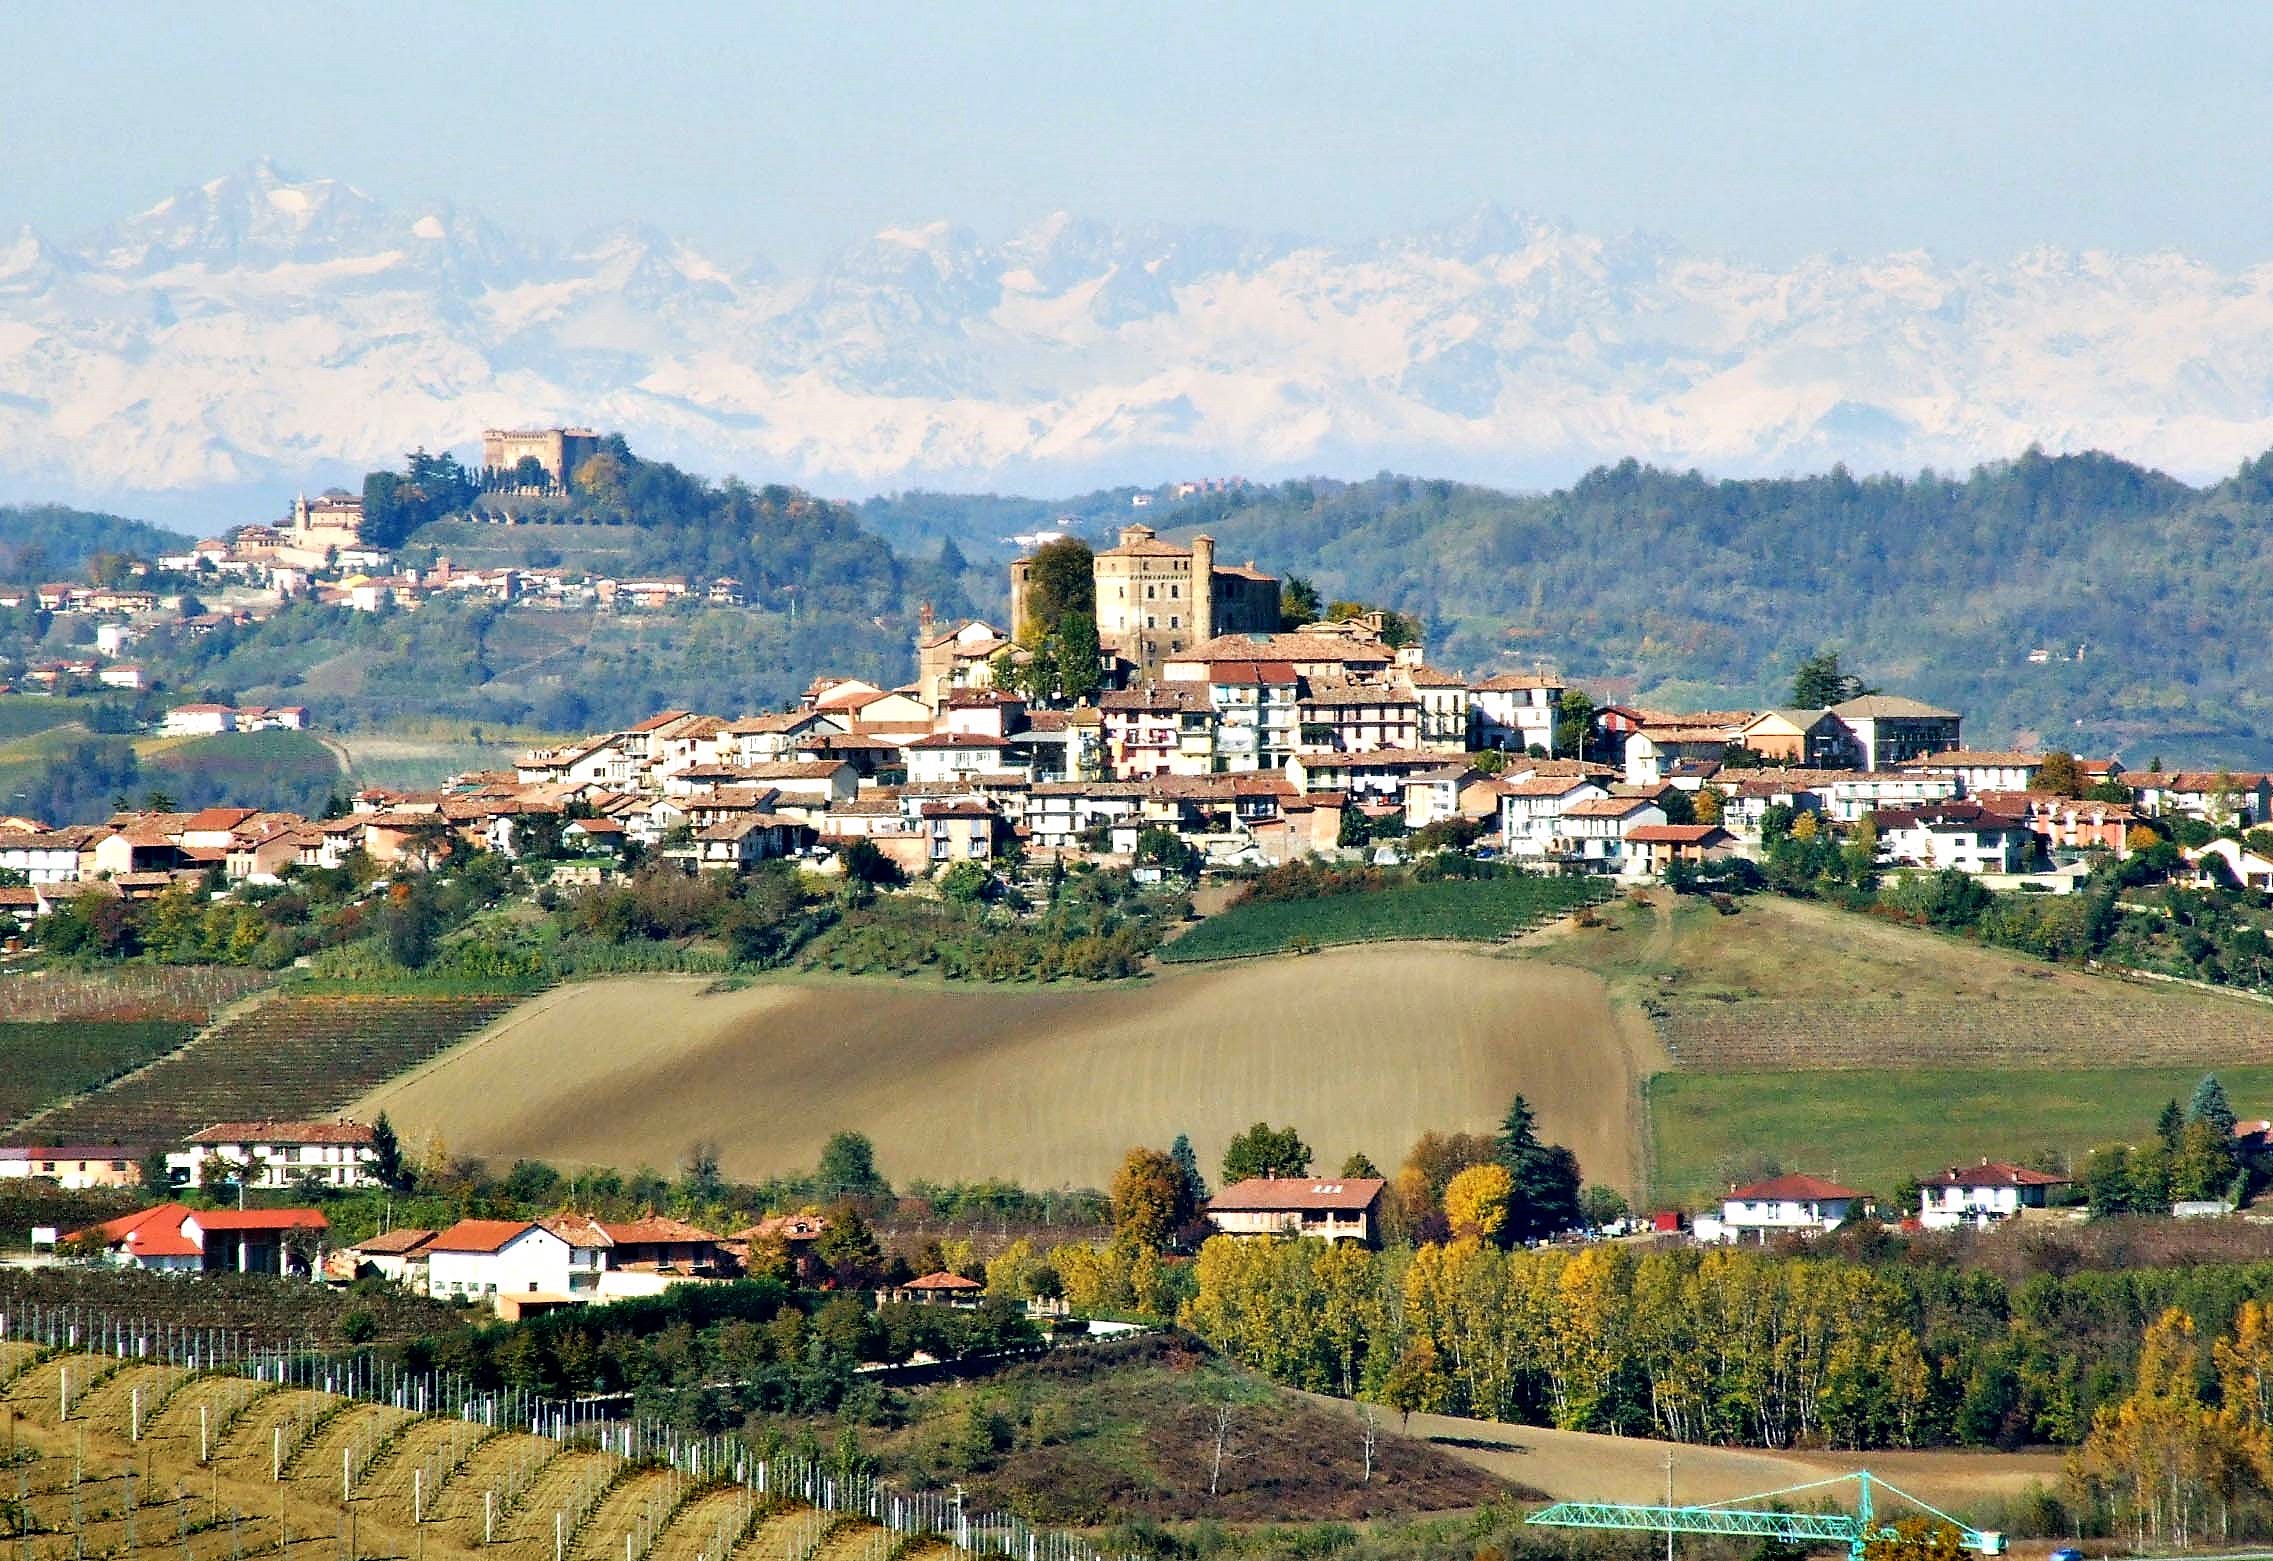 Kein Gemälde, sondern ein authentisches Foto: typisches Landschaftsbild im Piemont